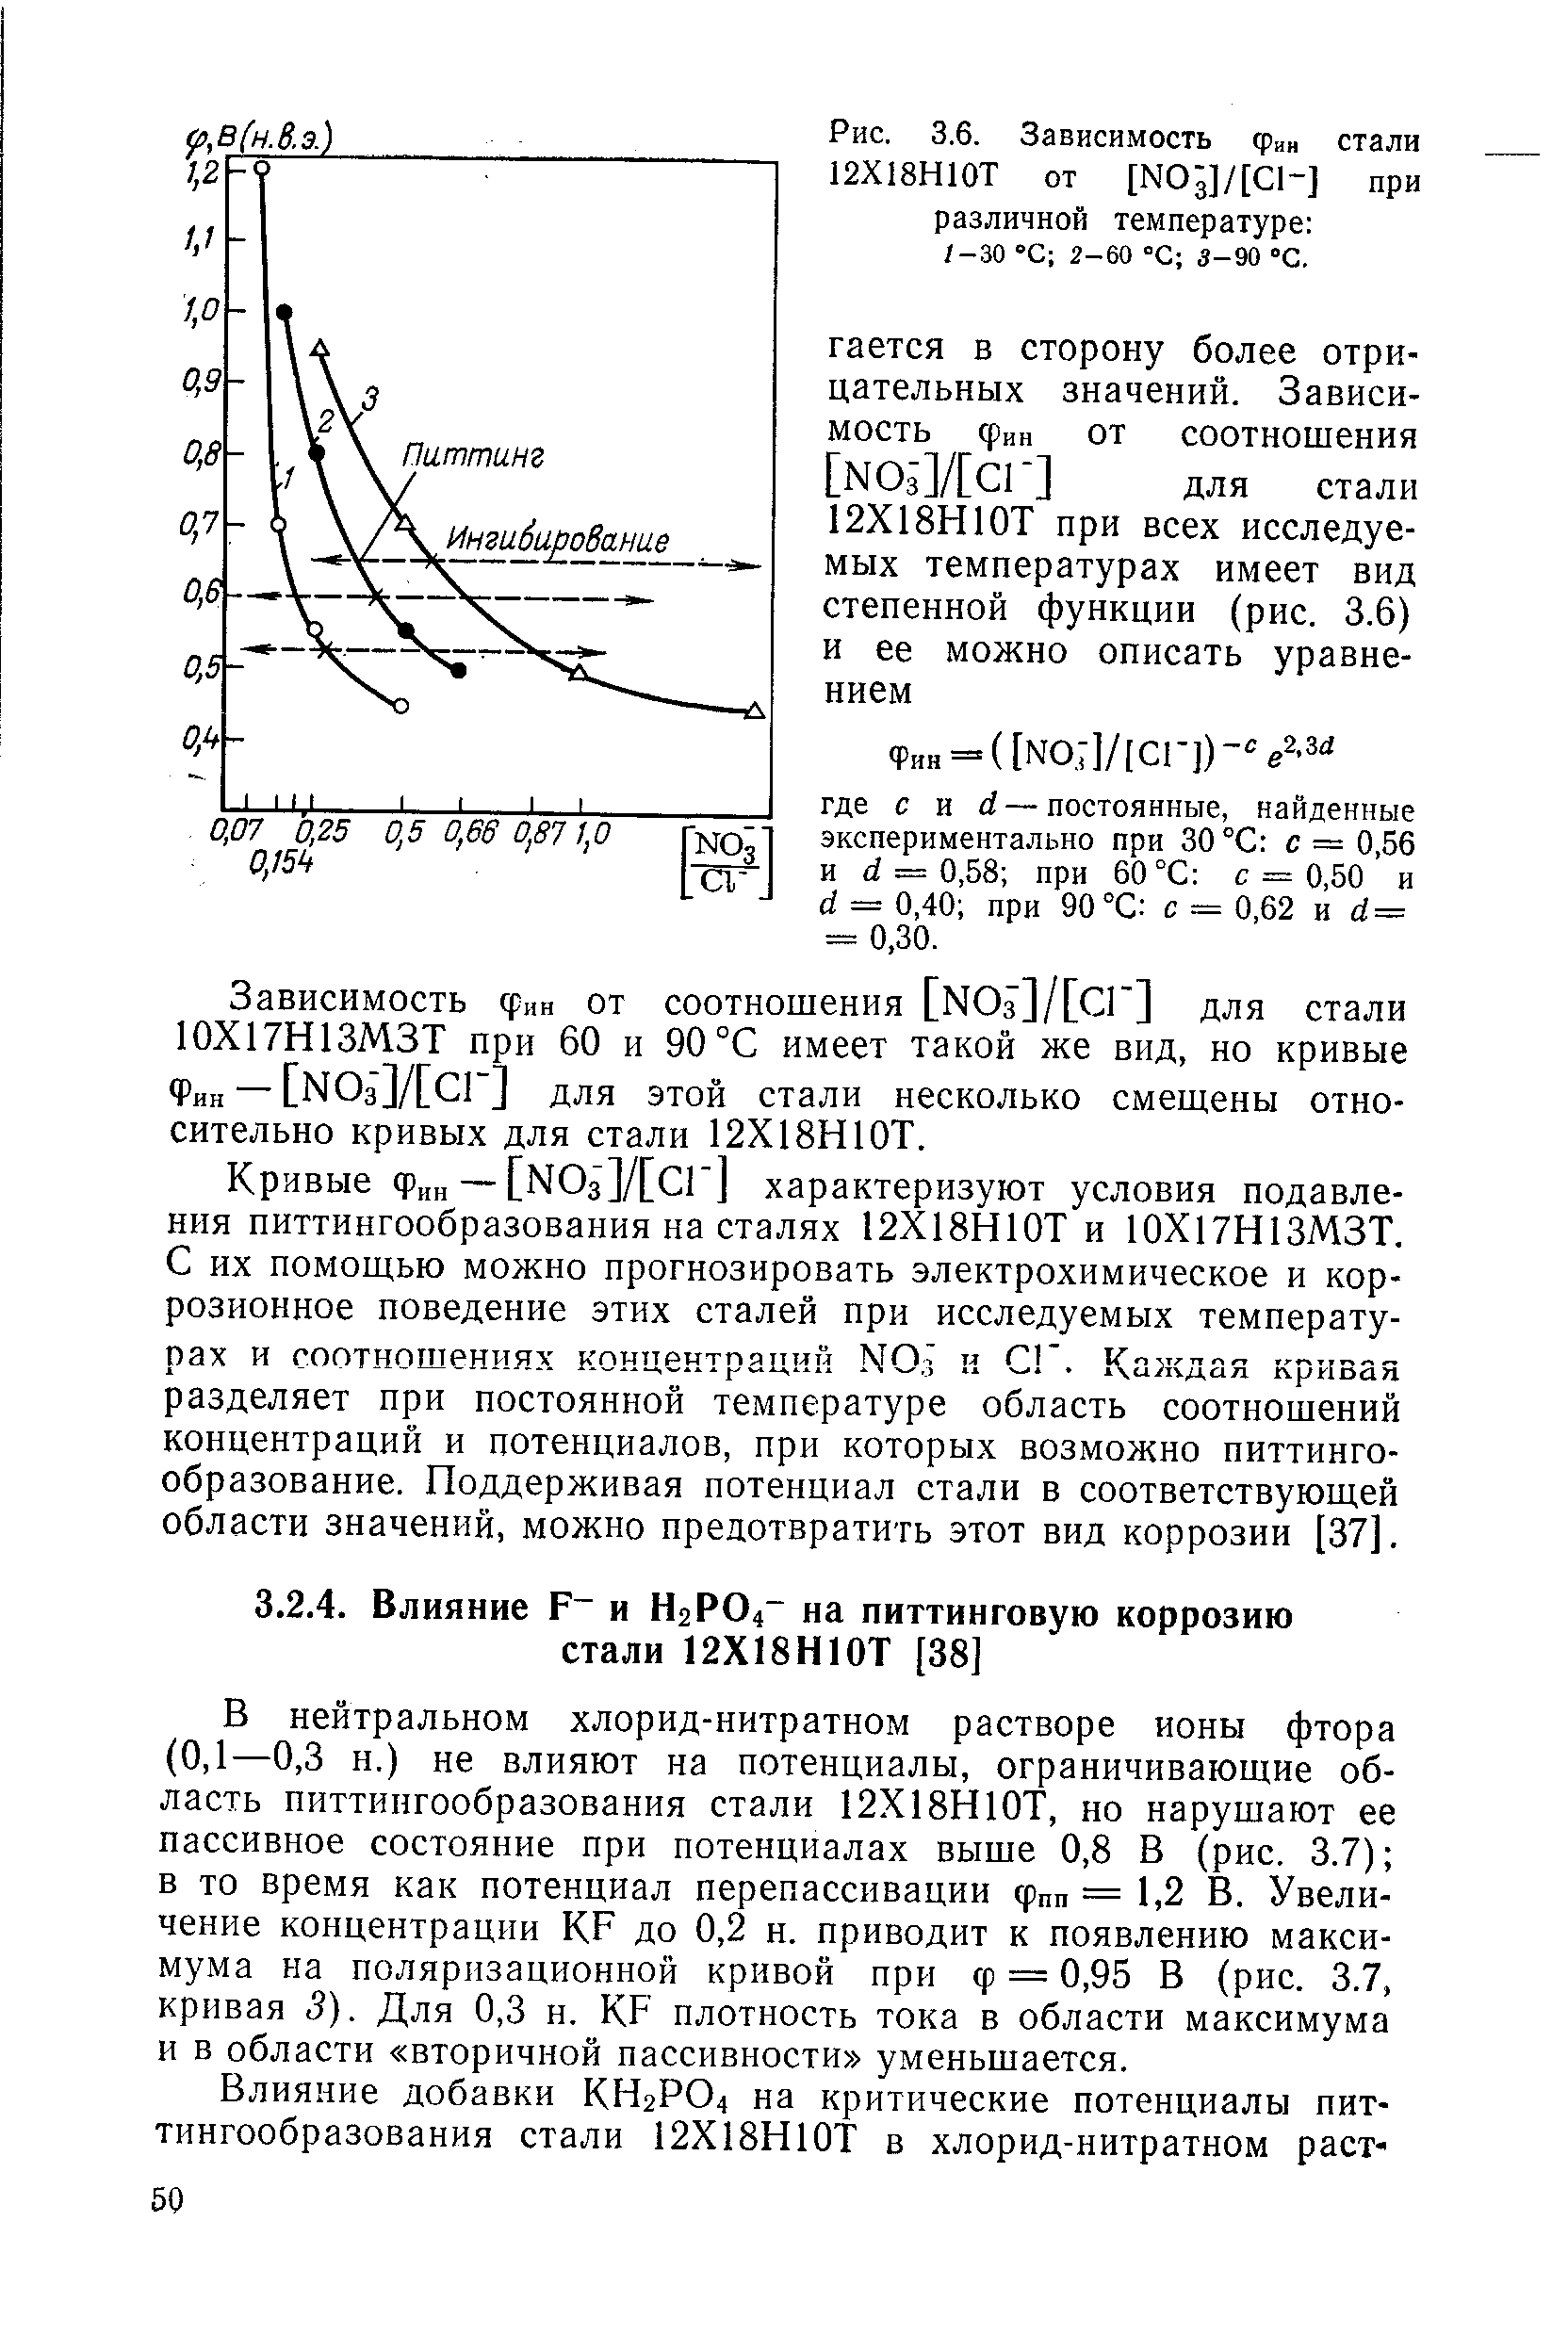 В нейтральном хлорид-нитратном растворе ионы фтора (0,1—0,3 н.) не влияют на потенциалы, ограничивающие область питтингообразования стали 12Х18Н10Т, но нарушают ее пассивное состояние при потенциалах выше 0,8 В (рис. 3.7) в то время как потенциал перепассивации фпп — 1,2 В. Увеличение концентрации KF до 0,2 н. приводит к появлению максимума на поляризационной кривой при ф = 0,95 В (рис. 3.7, кривая 5). Для 0,3 н. KF плотность тока в области максимума и в области вторичной пассивности уменьшается.